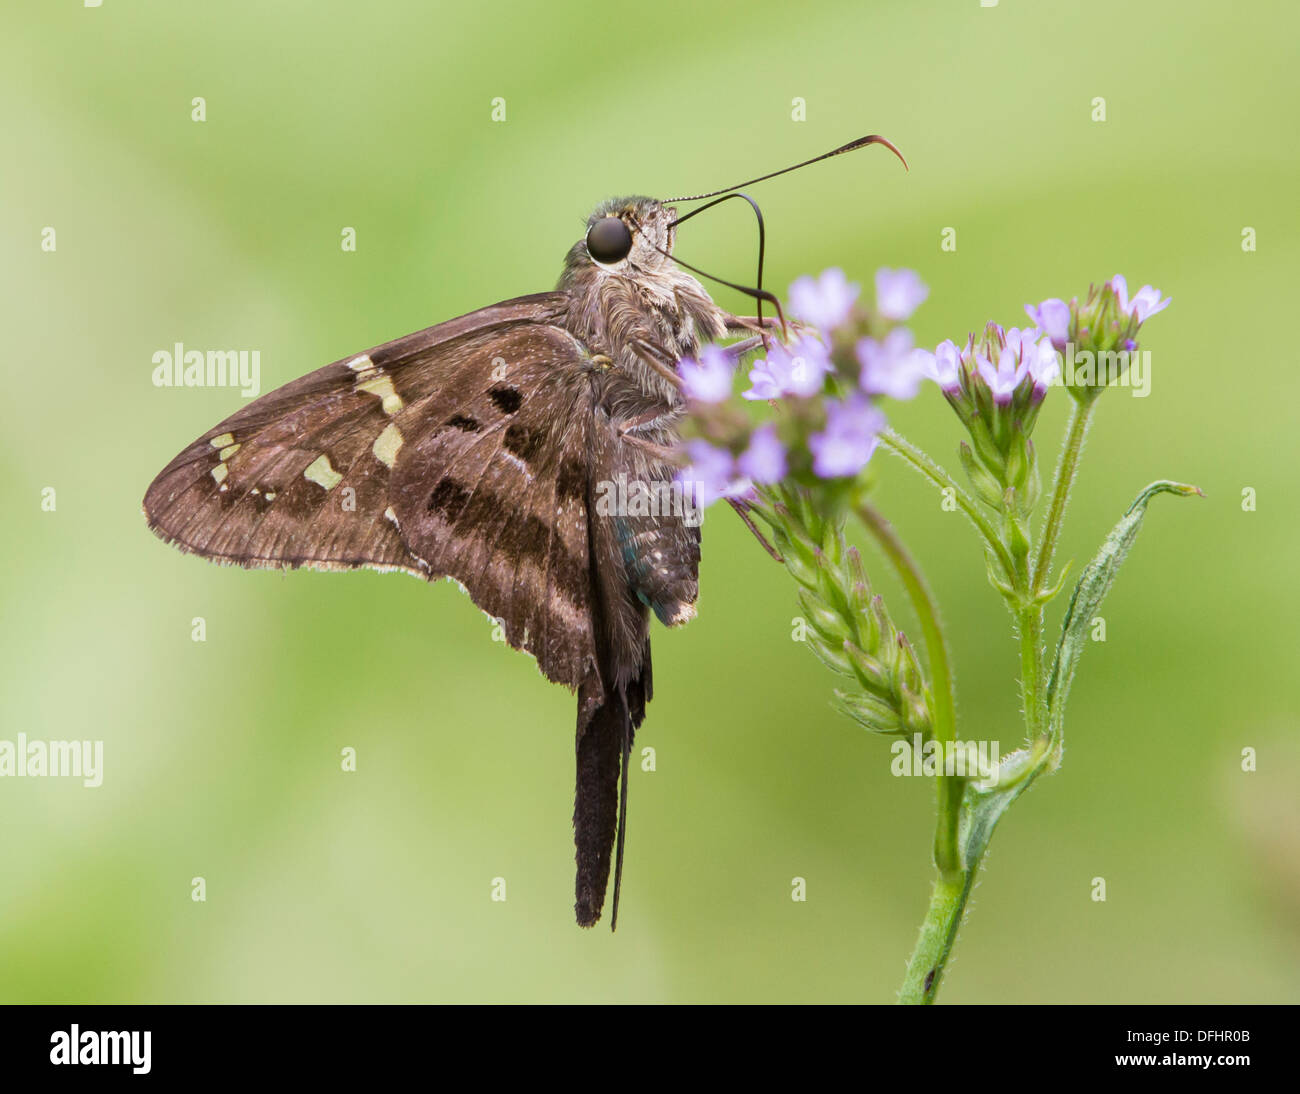 Lunga coda di skipper farfalla su fiori selvaggi isolati contro uno sfondo verde. Foto Stock